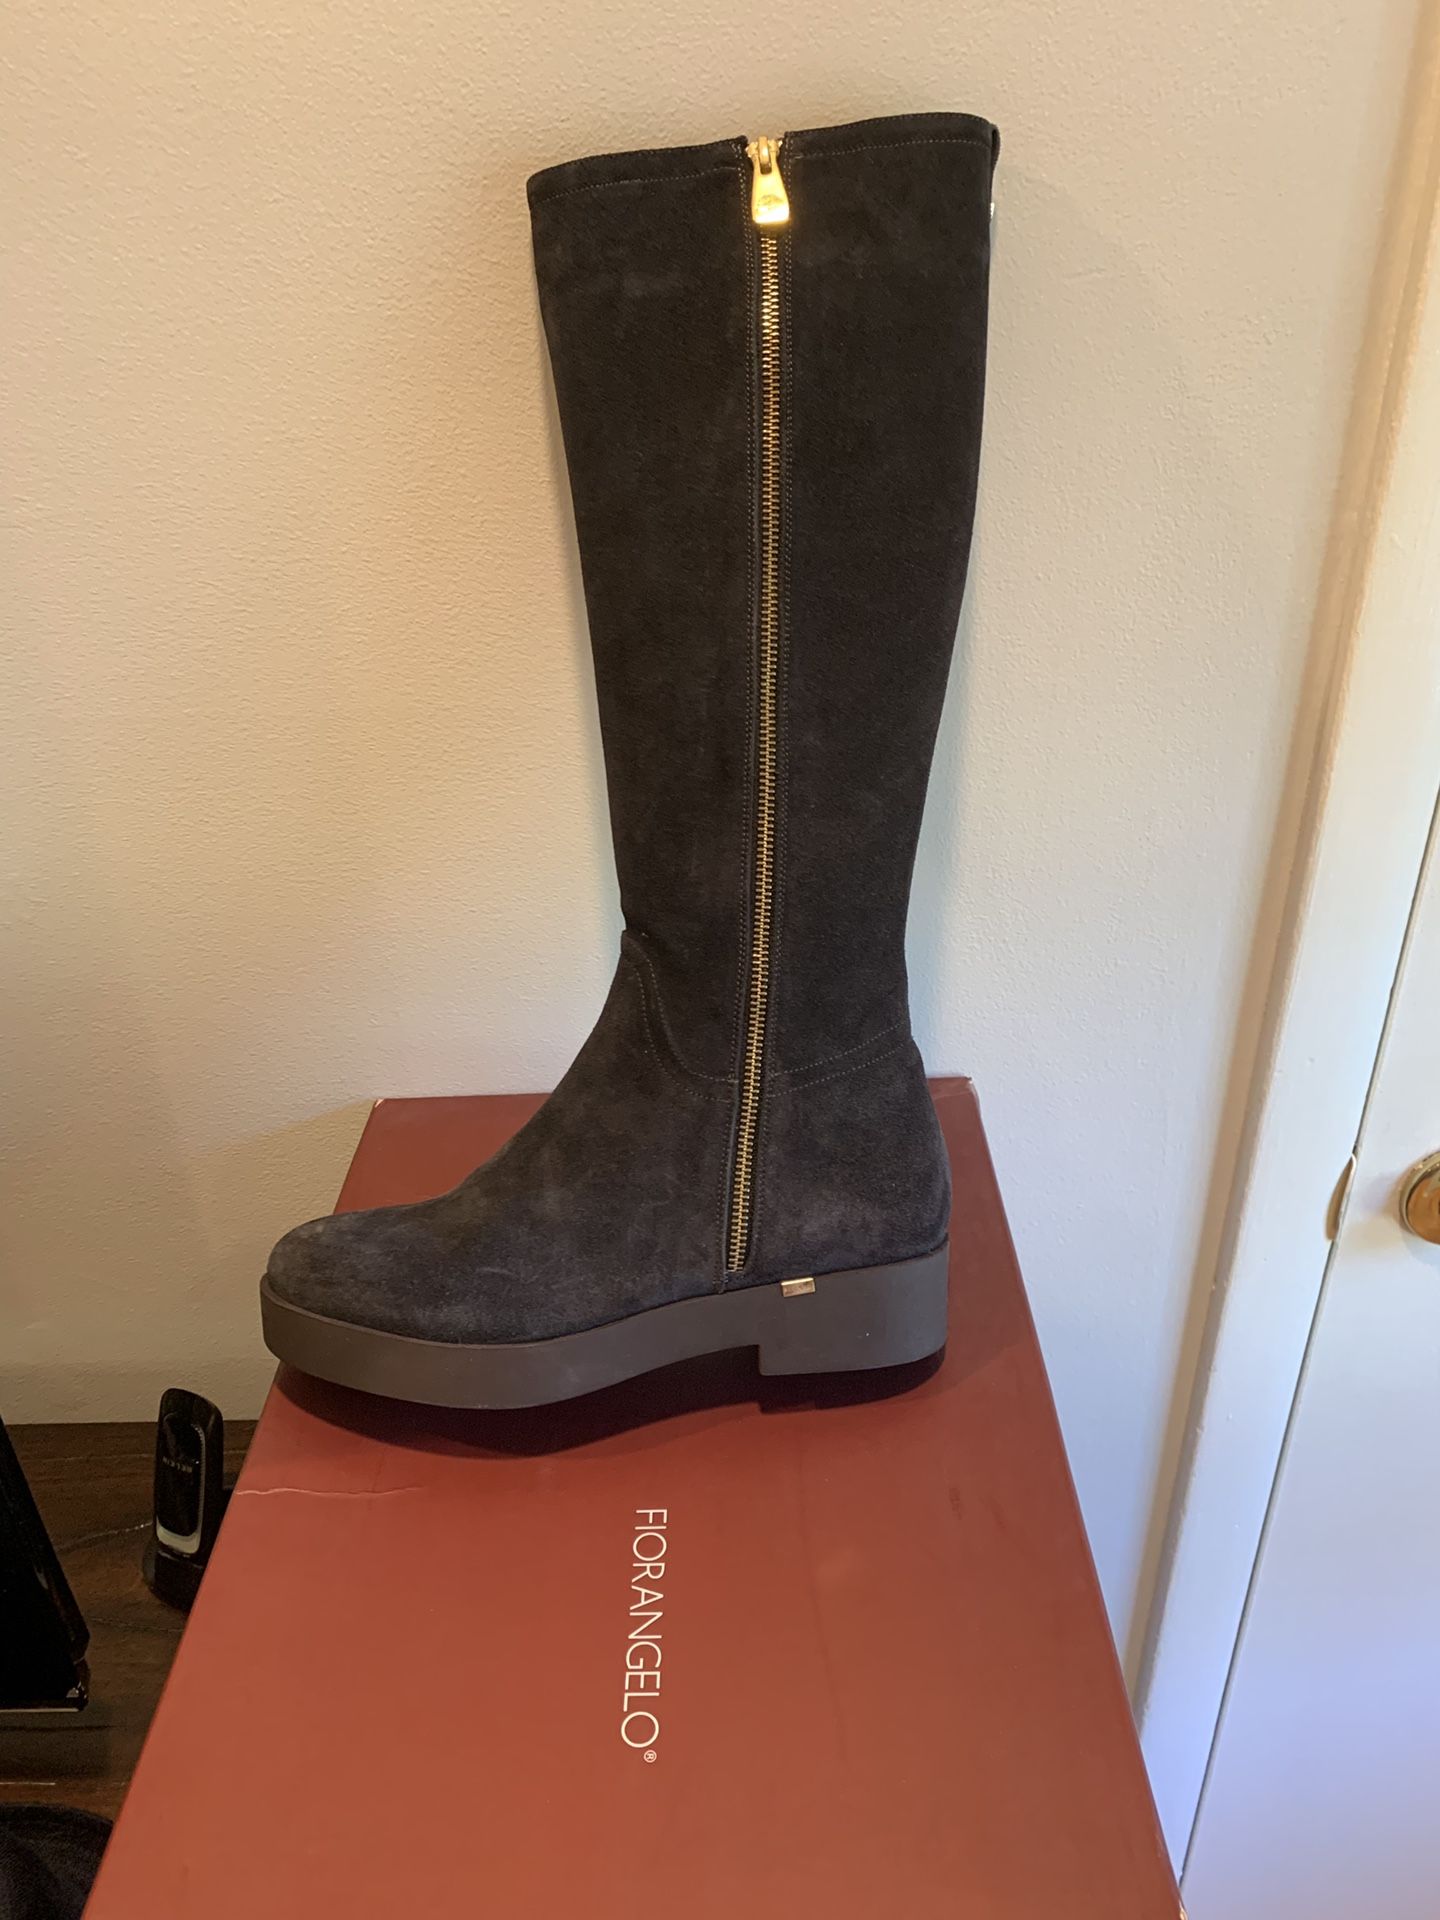 Fiorangelo women boots